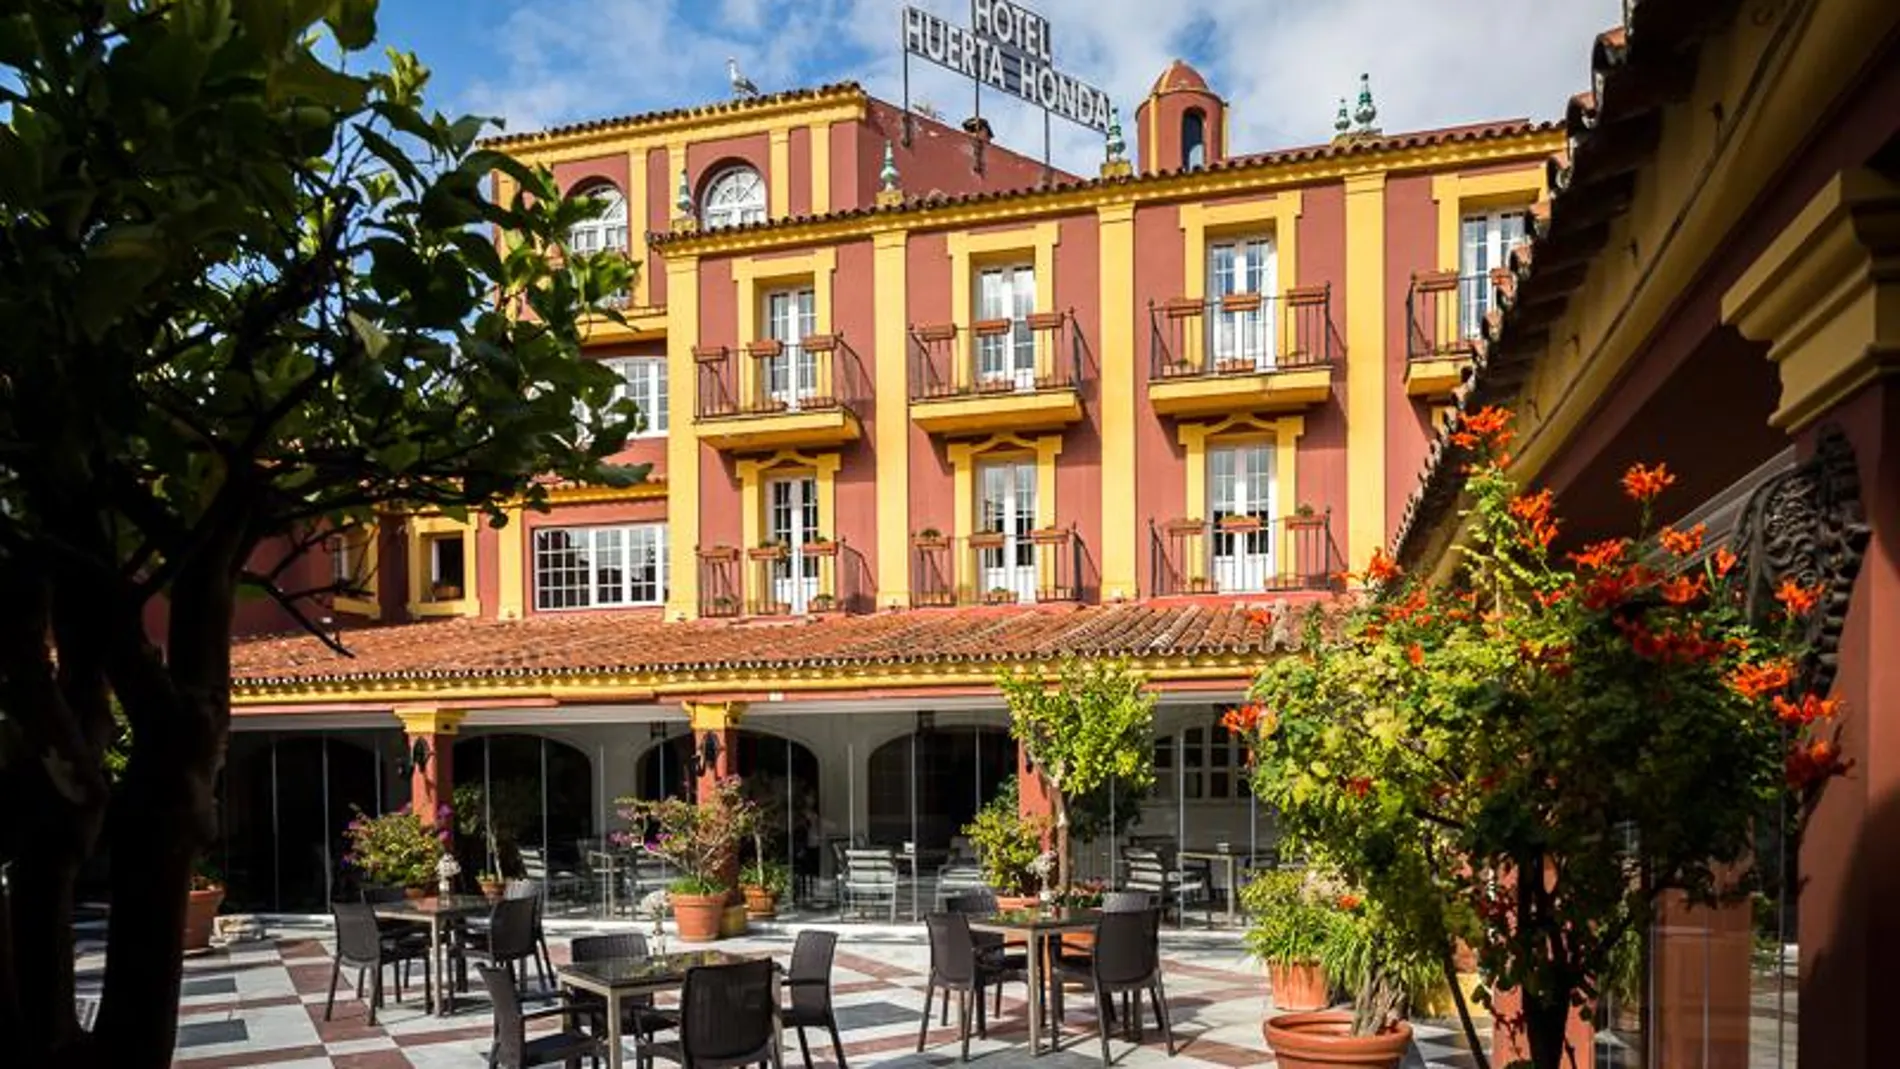 El espacio ajardinado está decorado por Victoria De Borbón Dos Sicilias | Hotel Huerta Honda